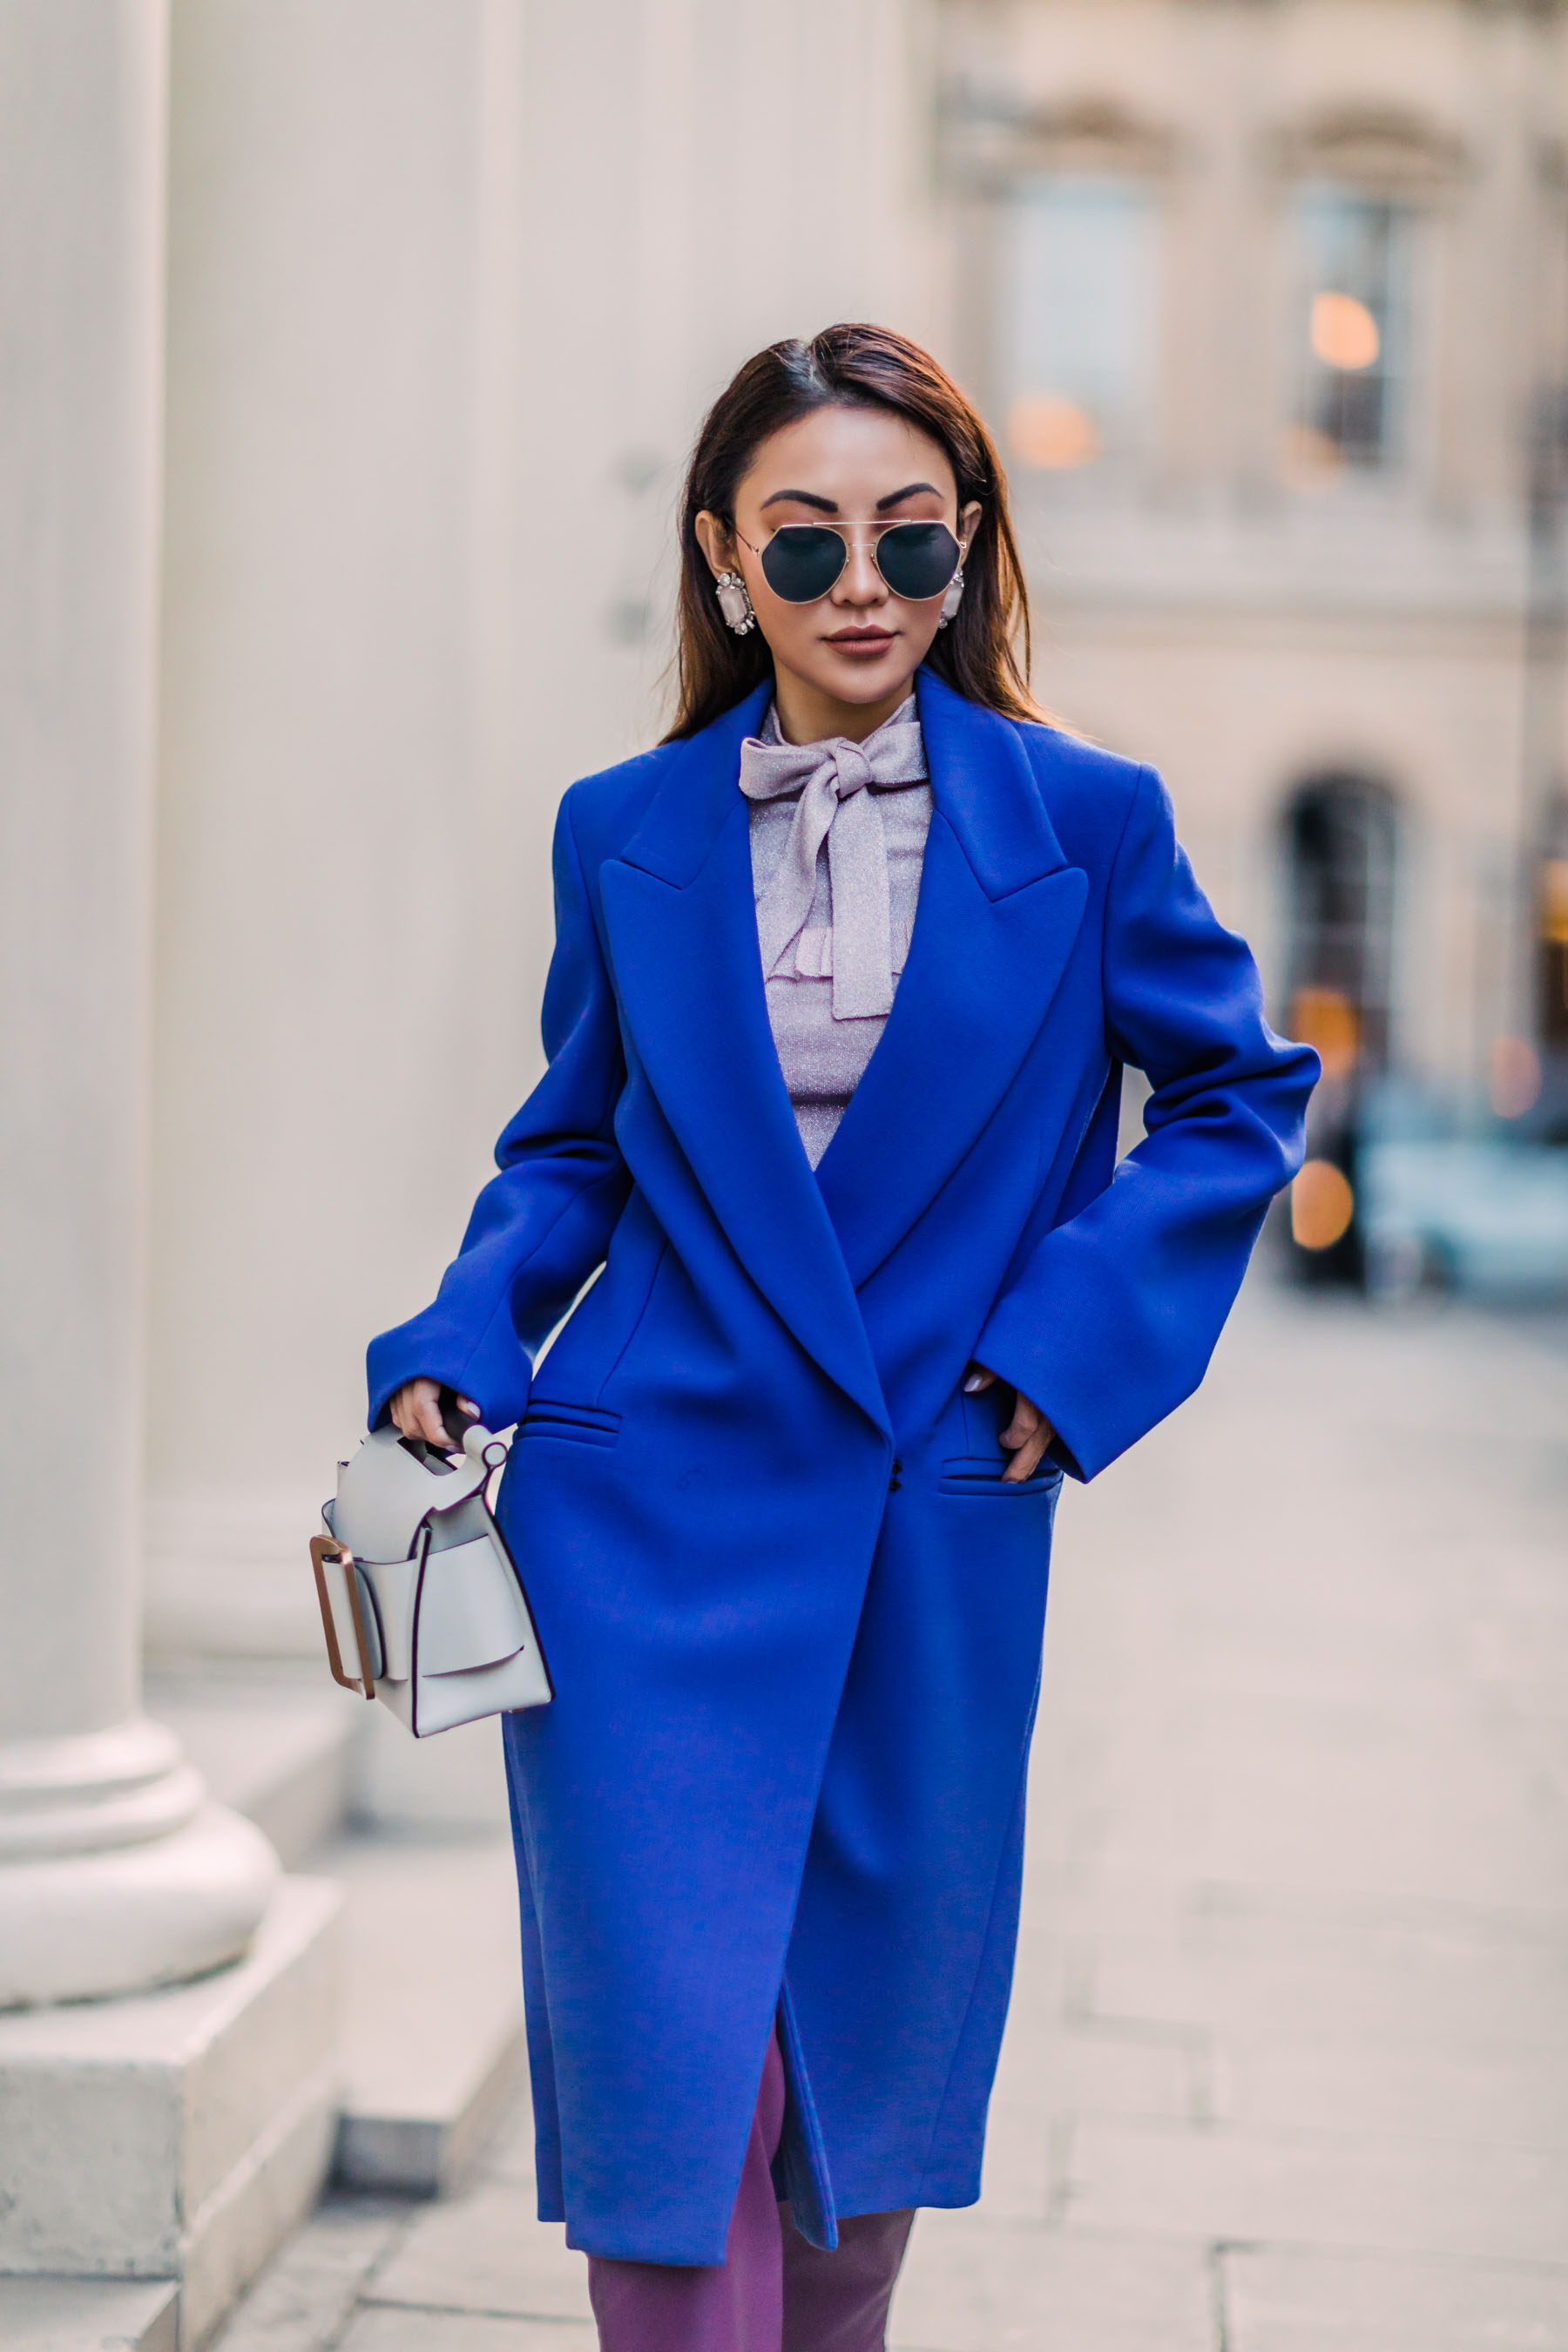 London Fashion Week Recap 2 - blue coat, white boots, purple pants, bold colors outfit // Notjessfashion.com